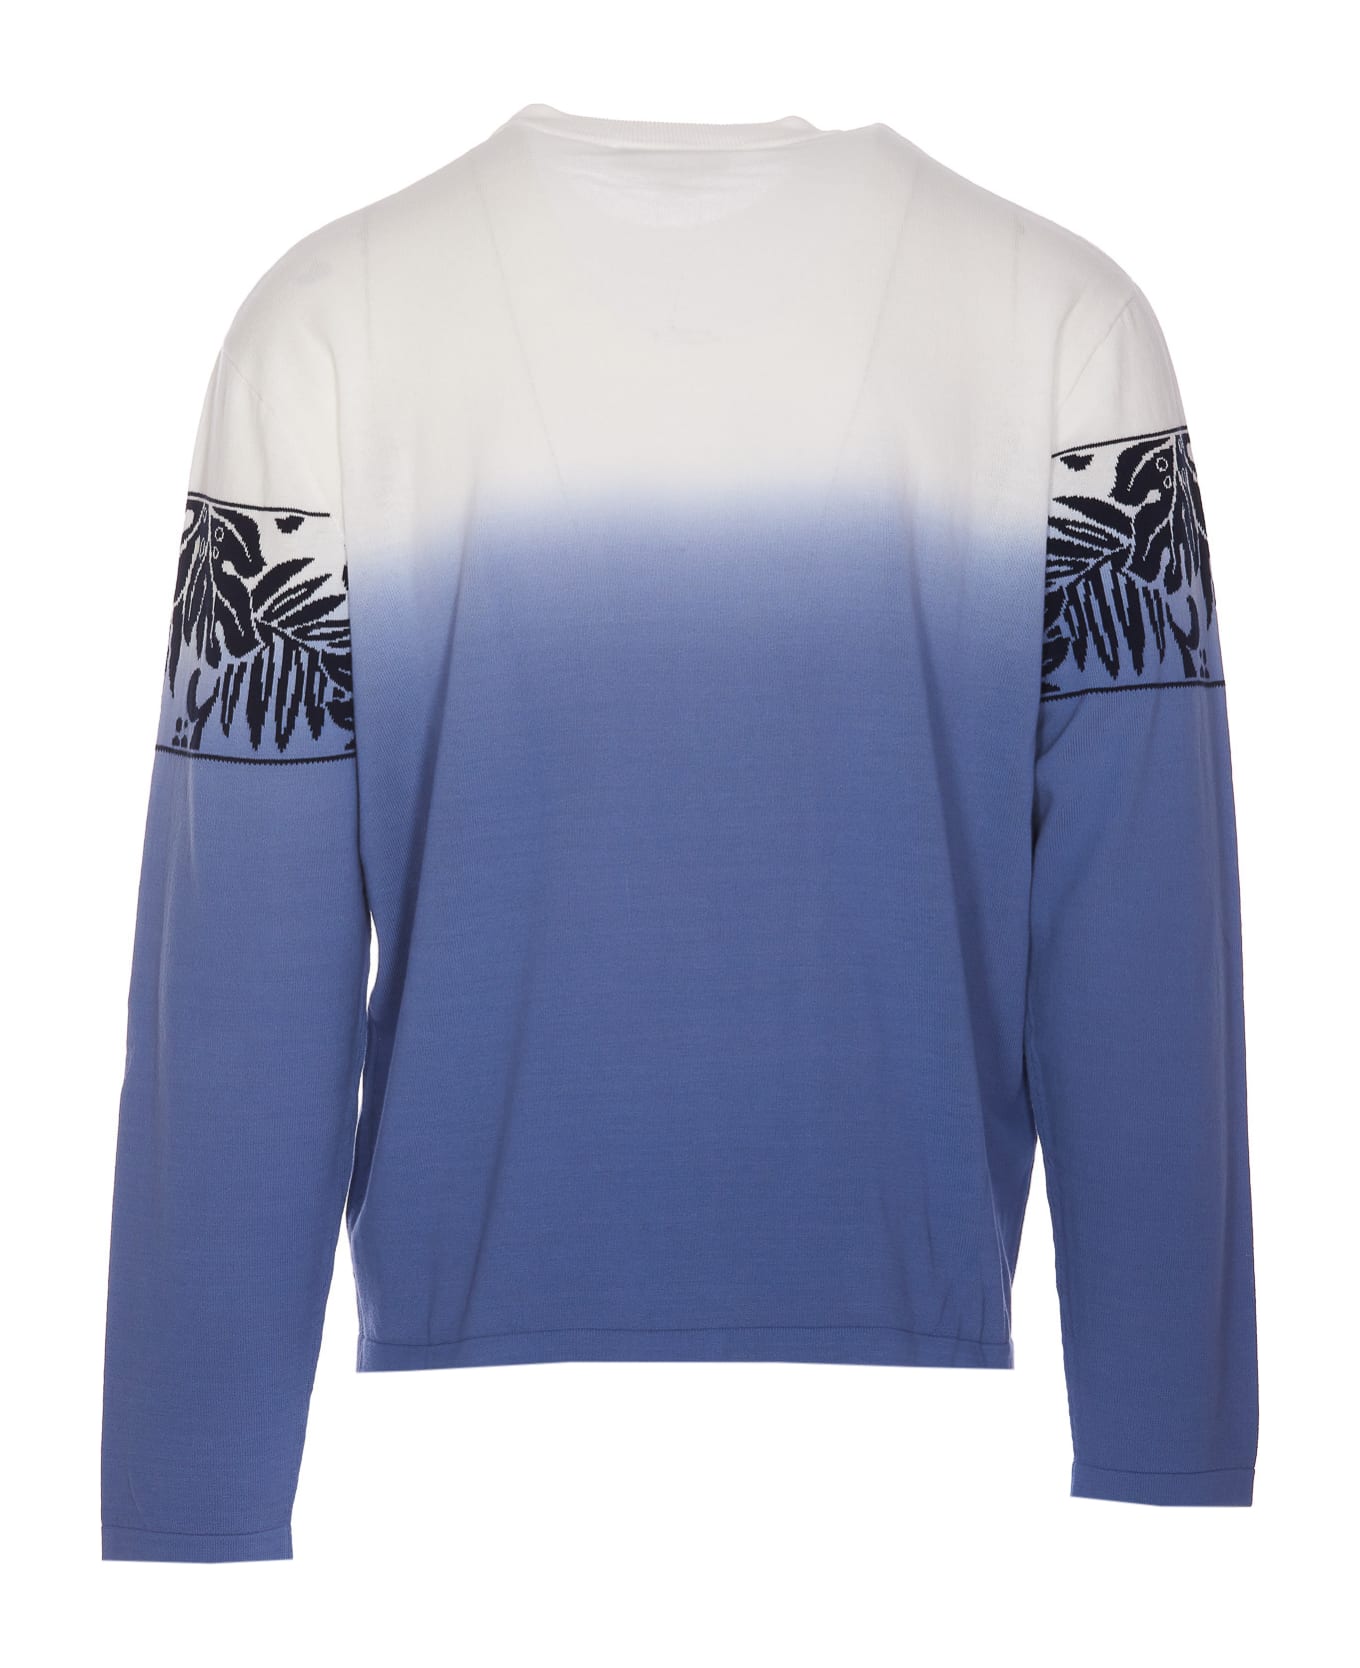 Maison Kitsuné Tropical Band Sweater - Blue ニットウェア